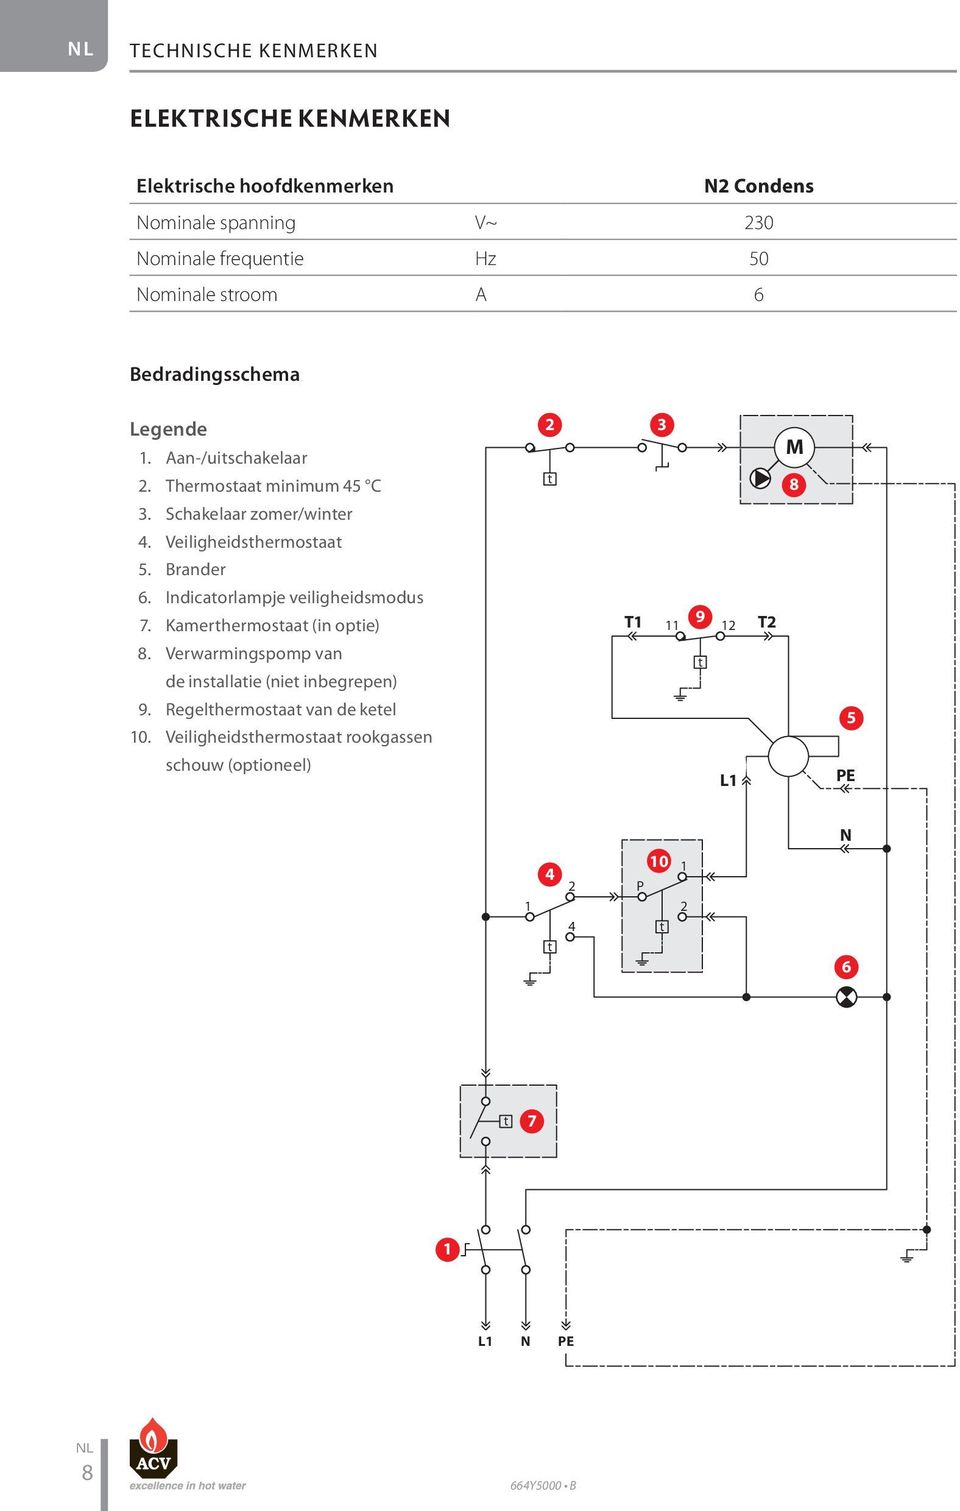 Brander 6. Indicatorlampje veiligheidsmodus 7. Kamerthermostaat (in optie) 8. Verwarmingspomp van de installatie (niet inbegrepen) 9.